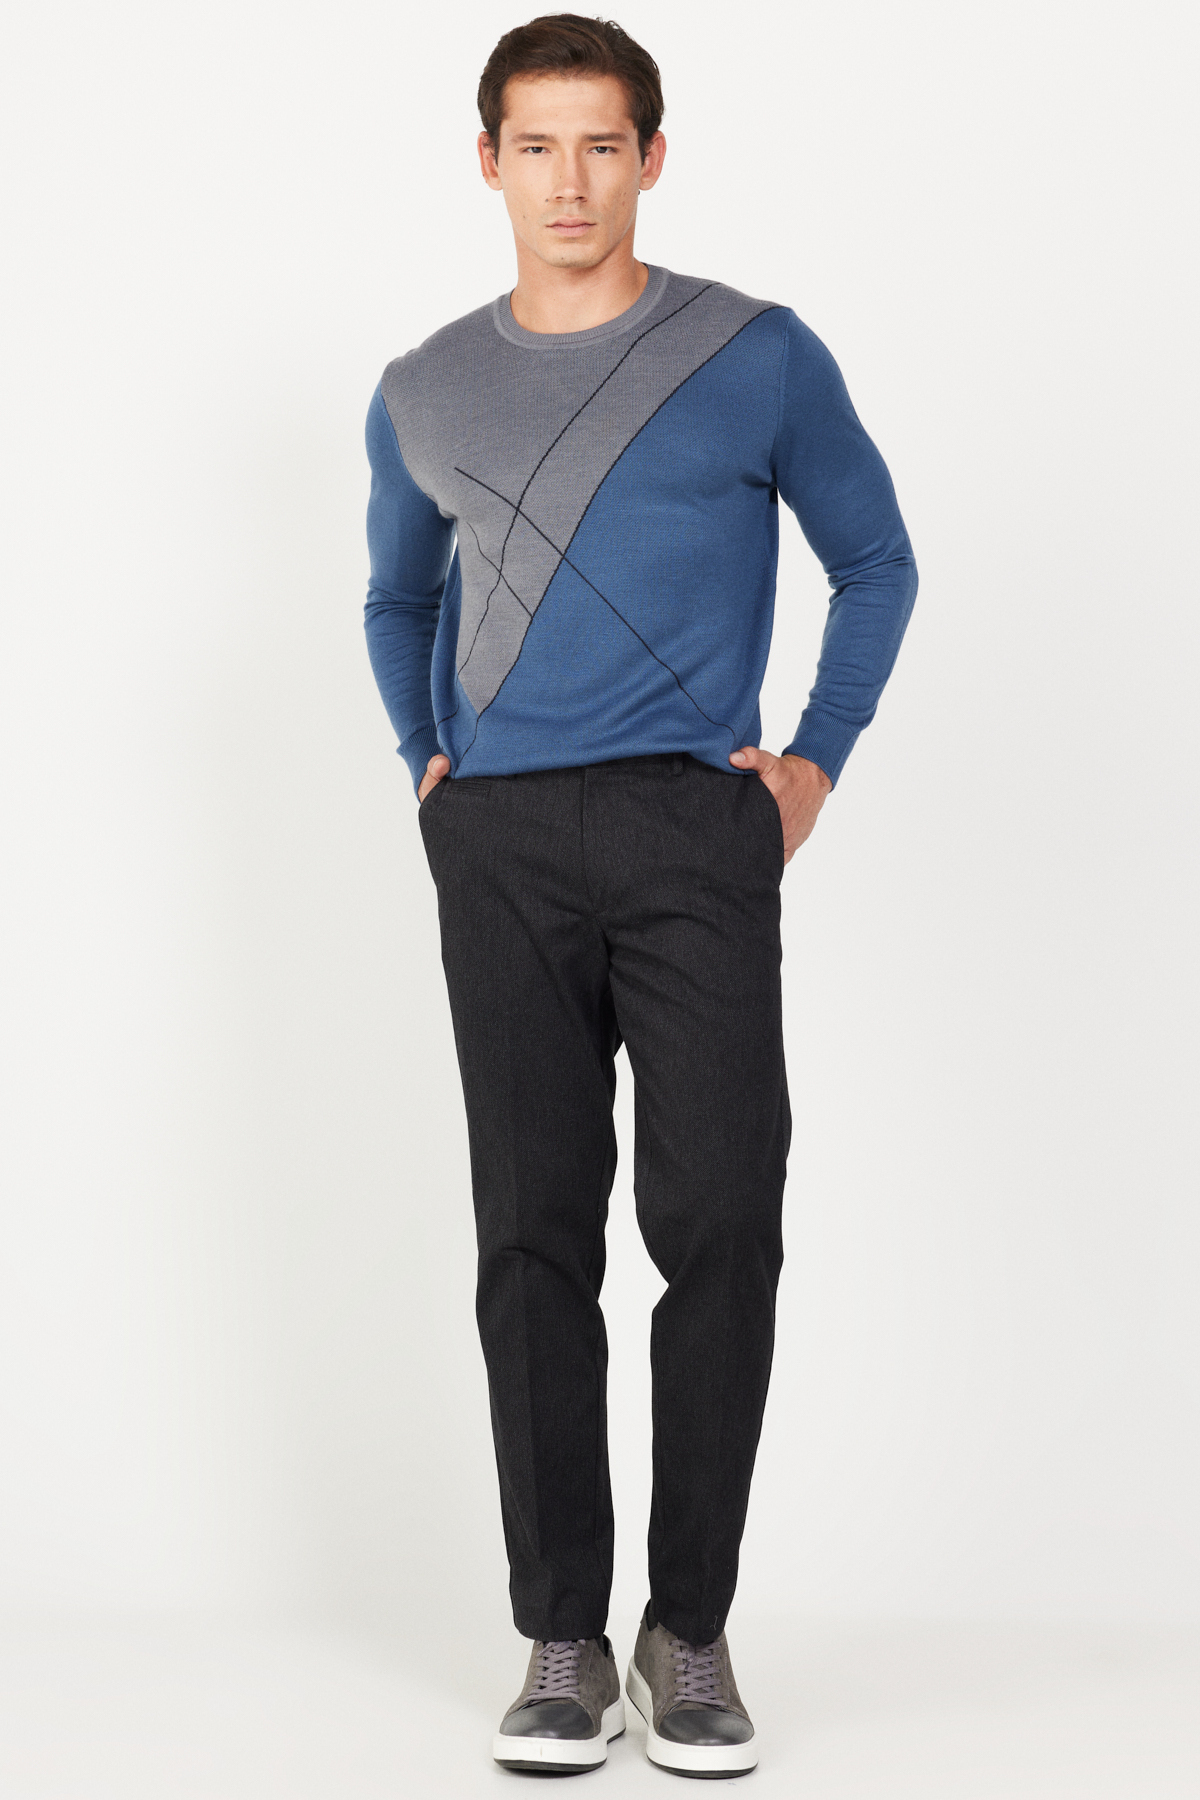 Levně ALTINYILDIZ CLASSICS Men's Black Comfort Fit Relaxed Cut Side Pocket Cotton Diagonal Patterned Trousers